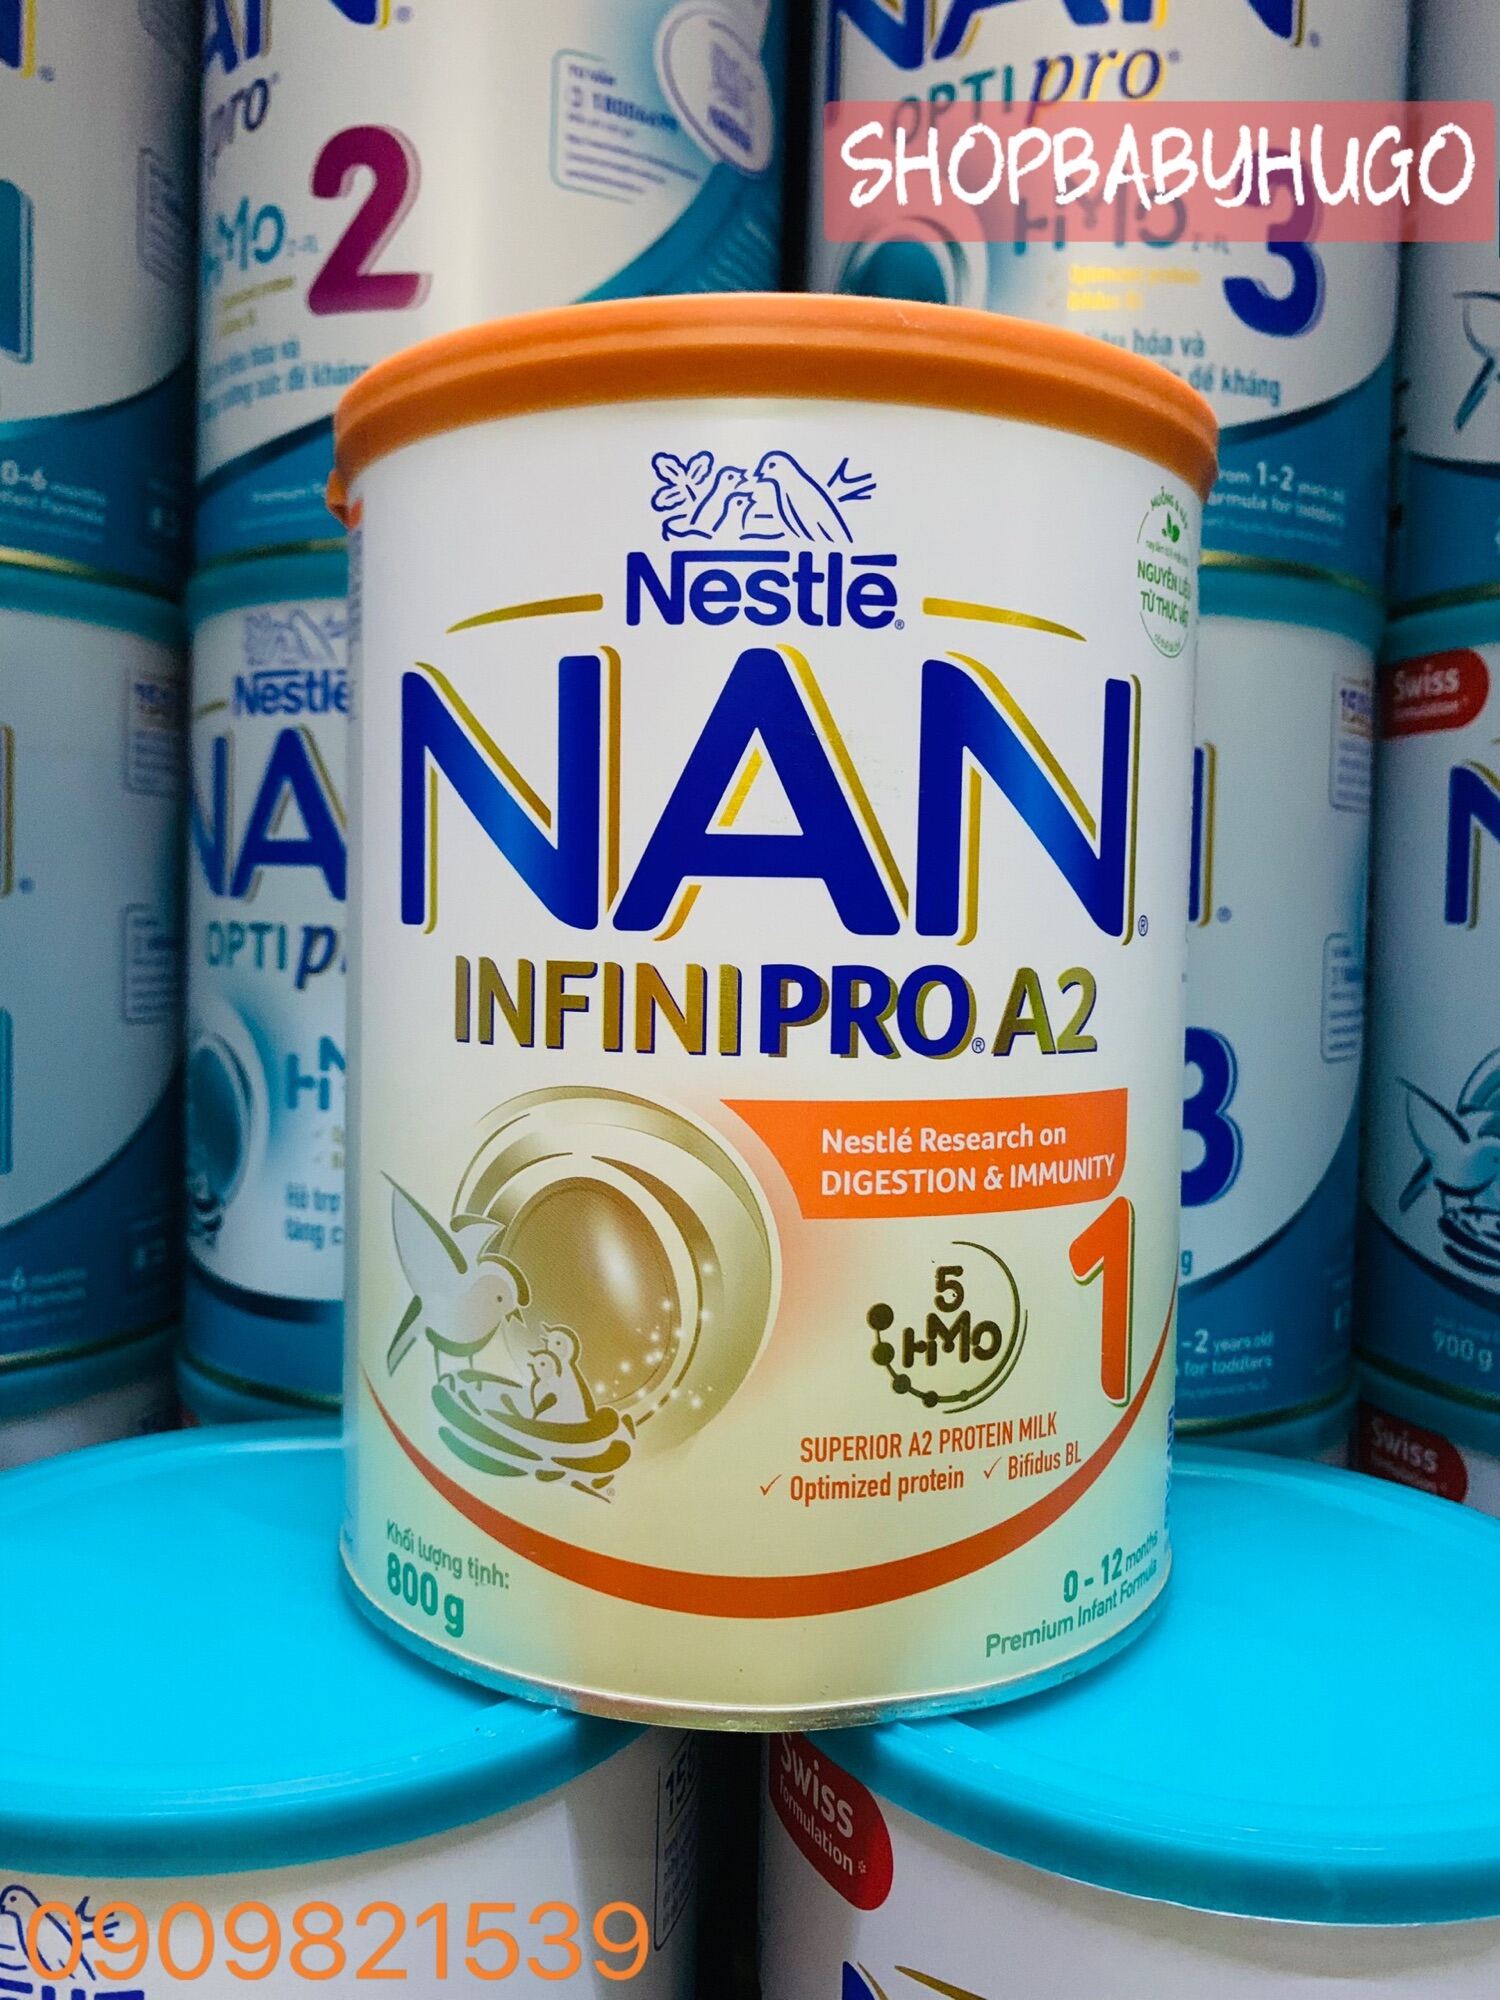 Sữa bột nan infinipro a2 số 1 800g - ảnh sản phẩm 1